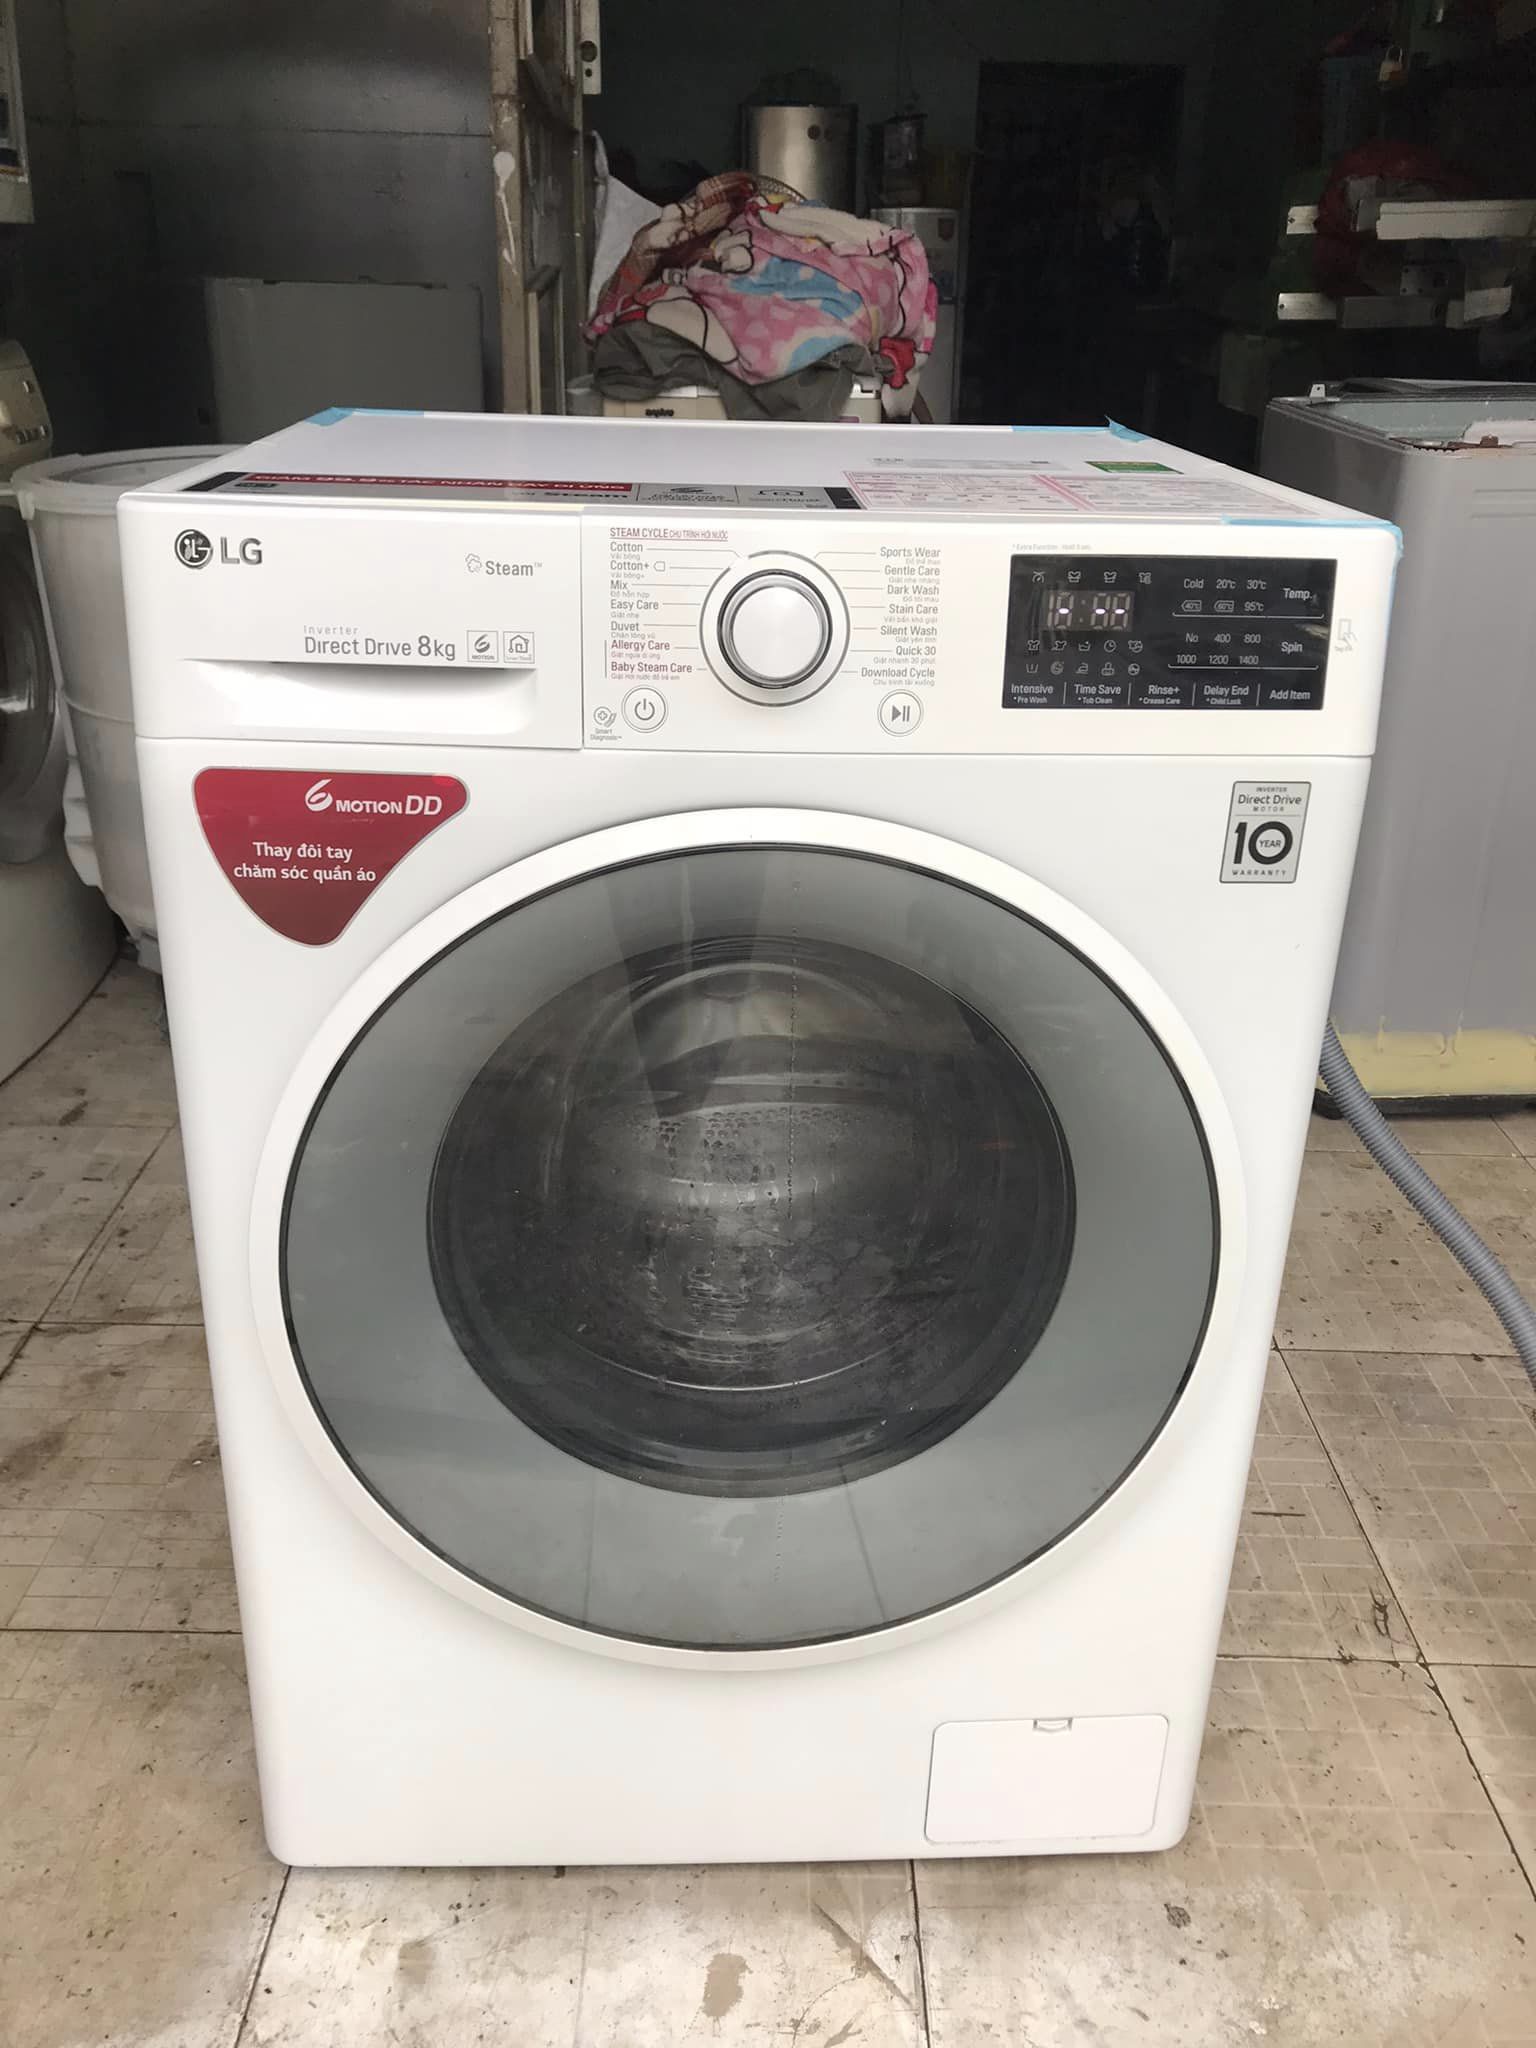 Máy giặt cửa ngang (LG) Mới và đẹp (8kg) model: FC1408s4w2